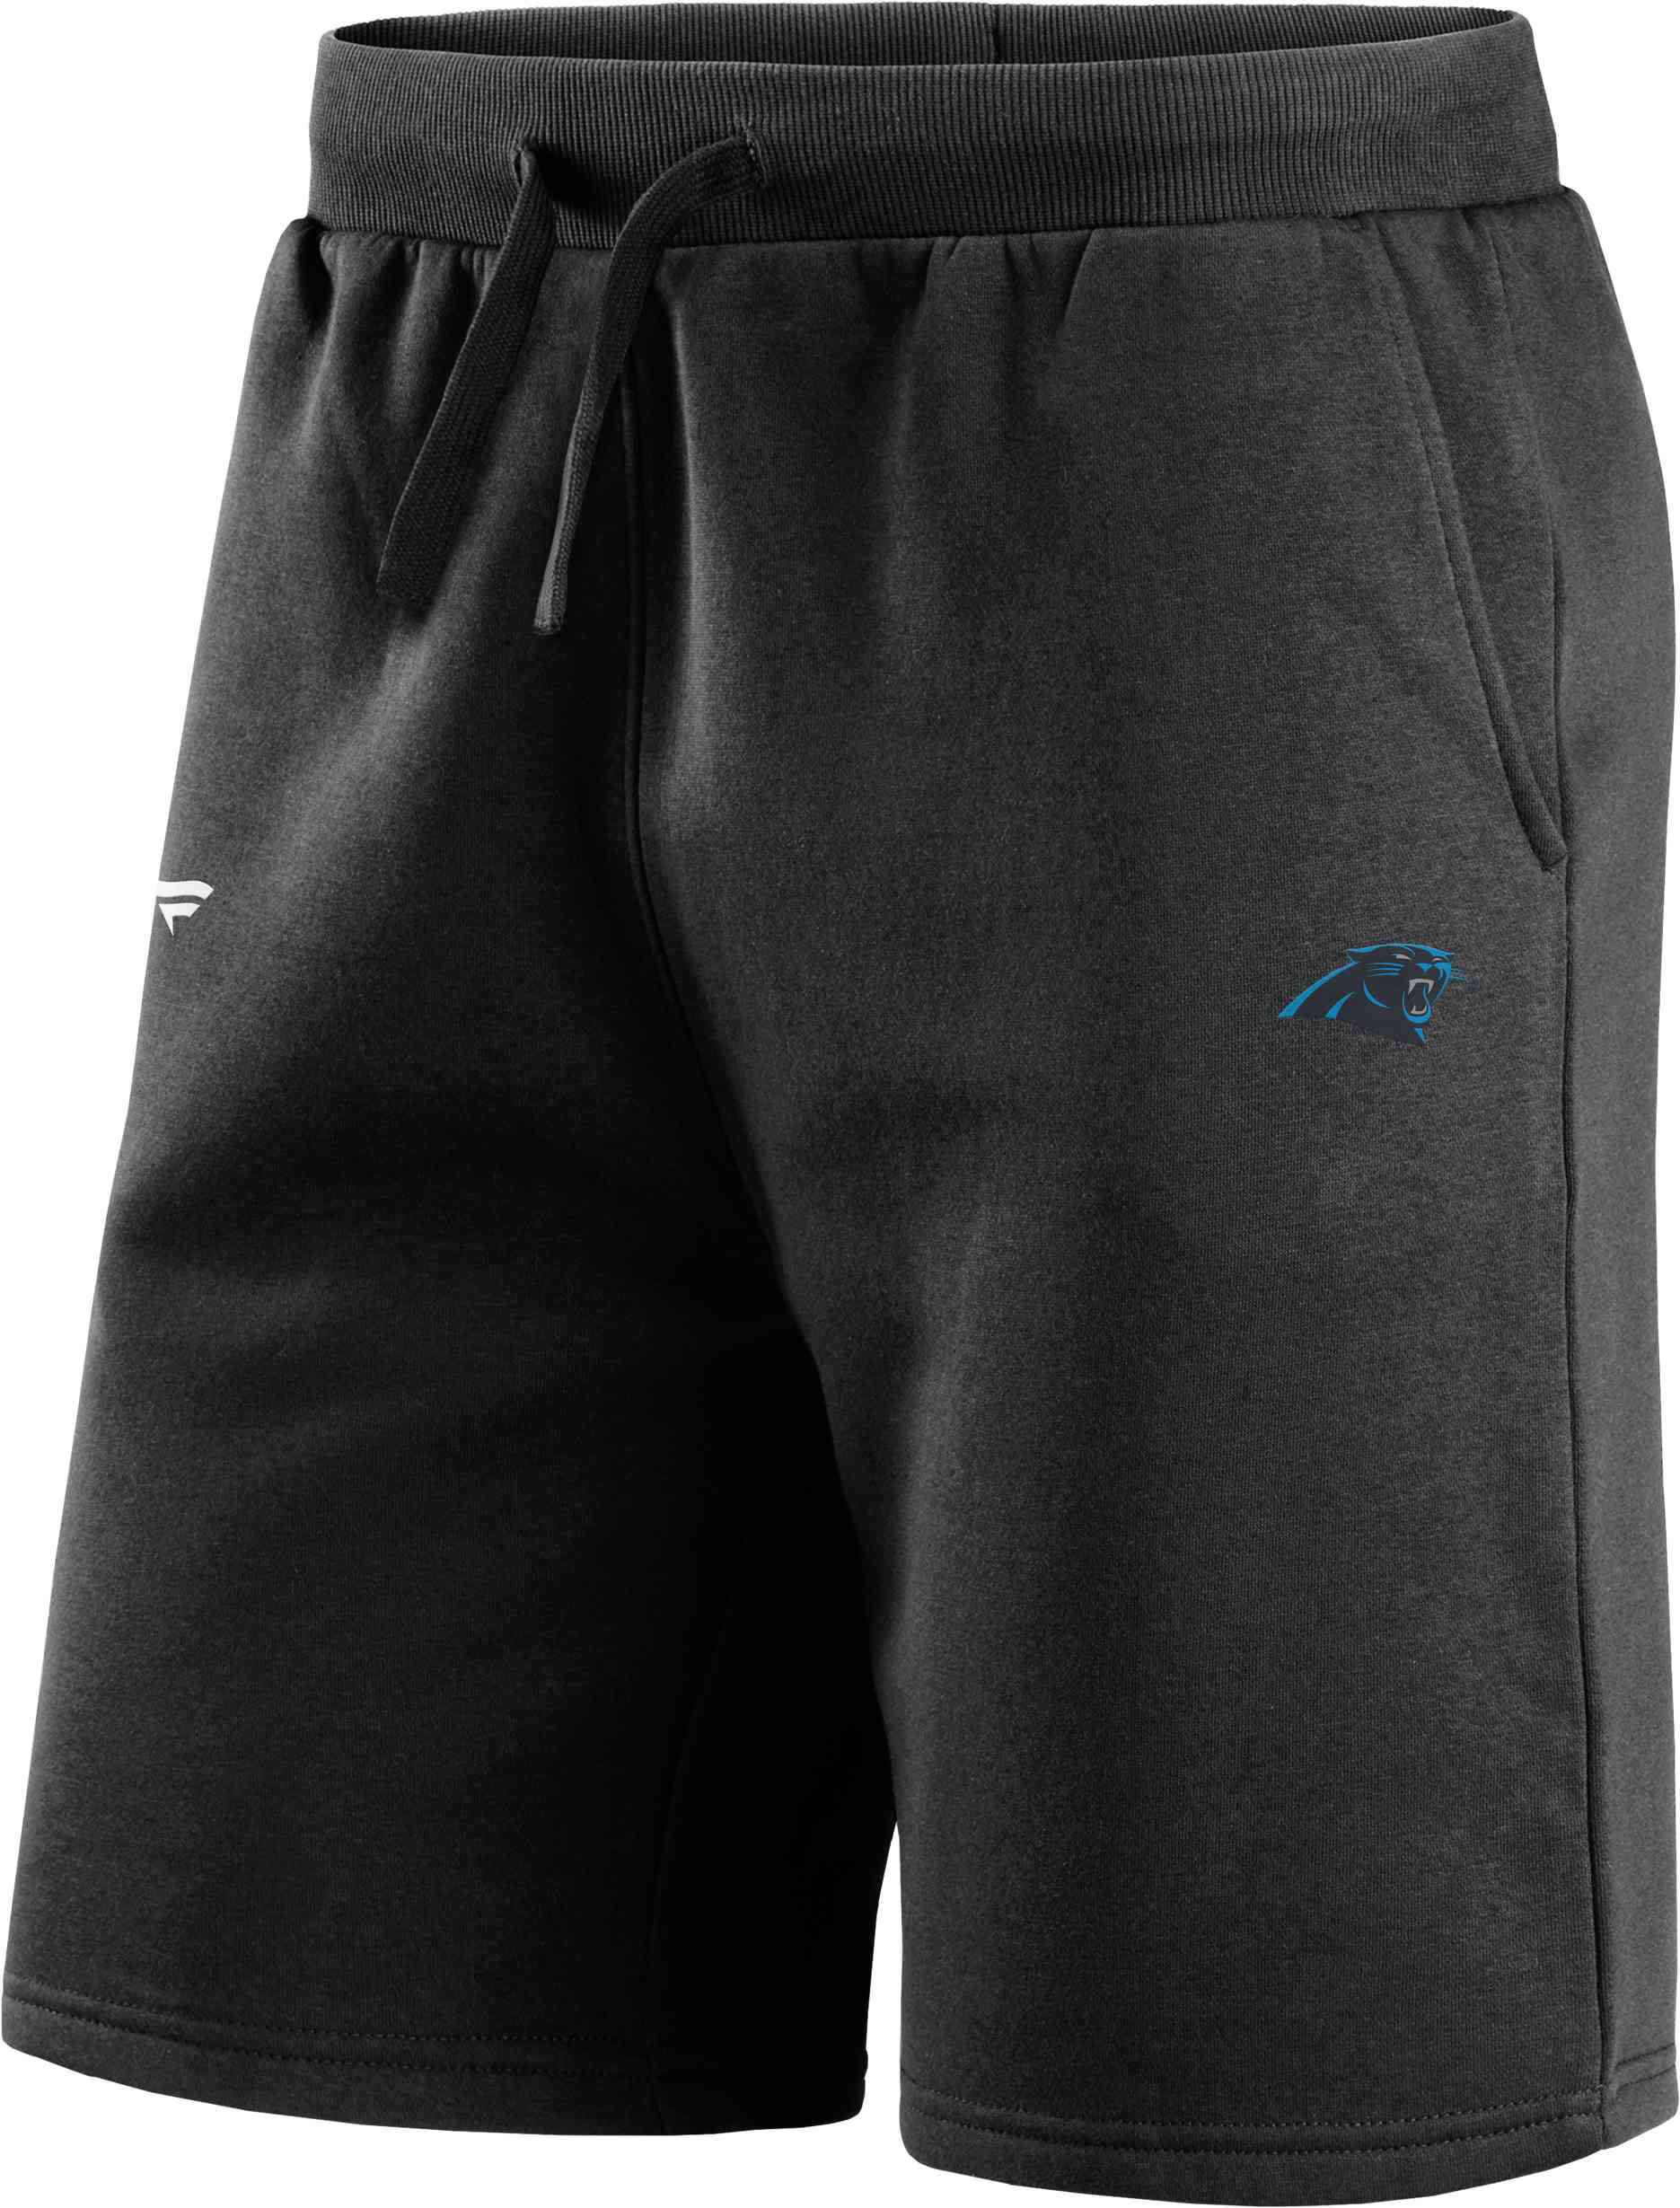 Fanatics - NFL Carolina Panthers Primary Logo Fleece Shorts